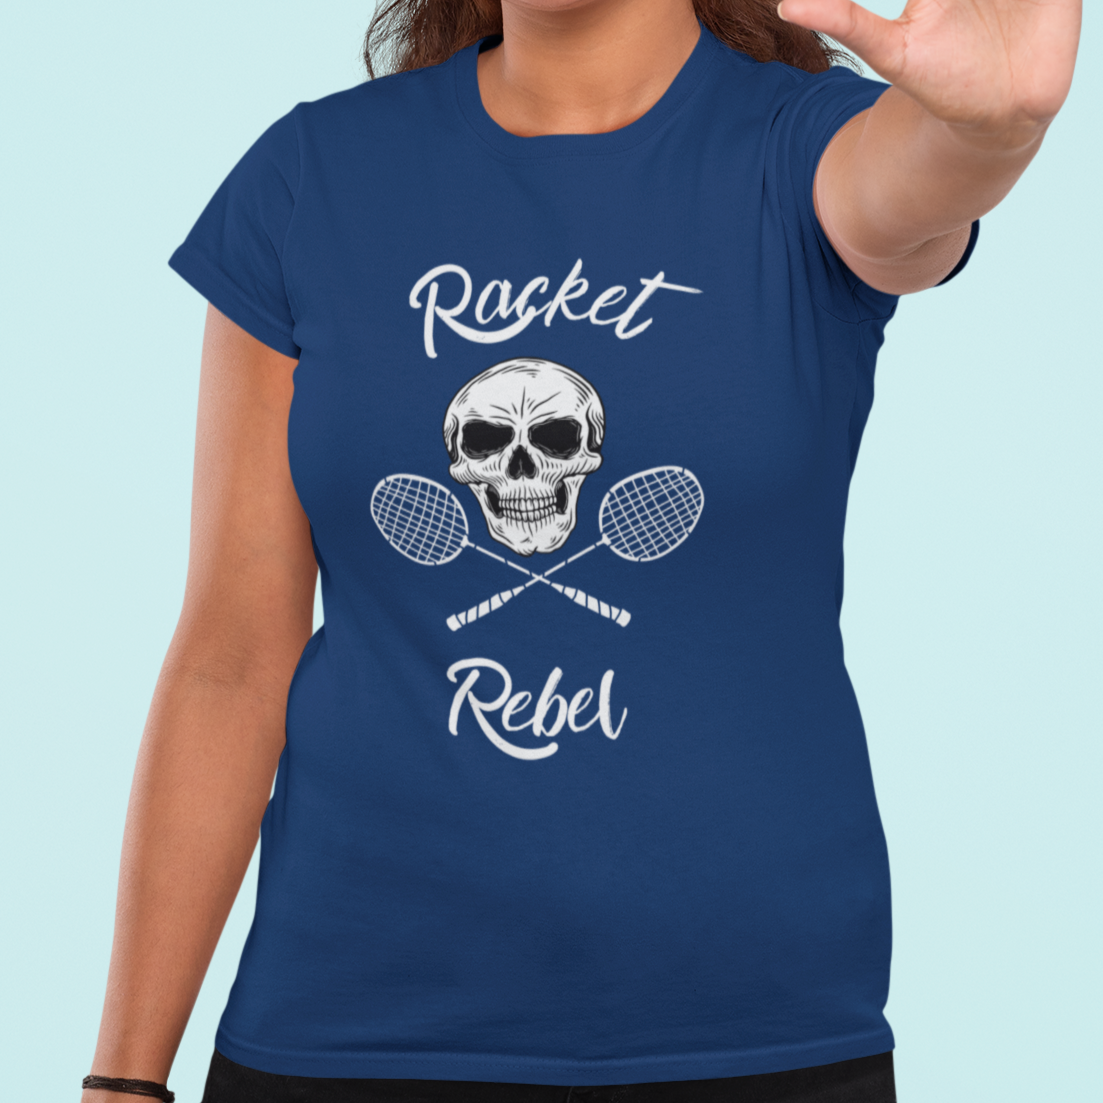 Racket Rebels Women's Tee